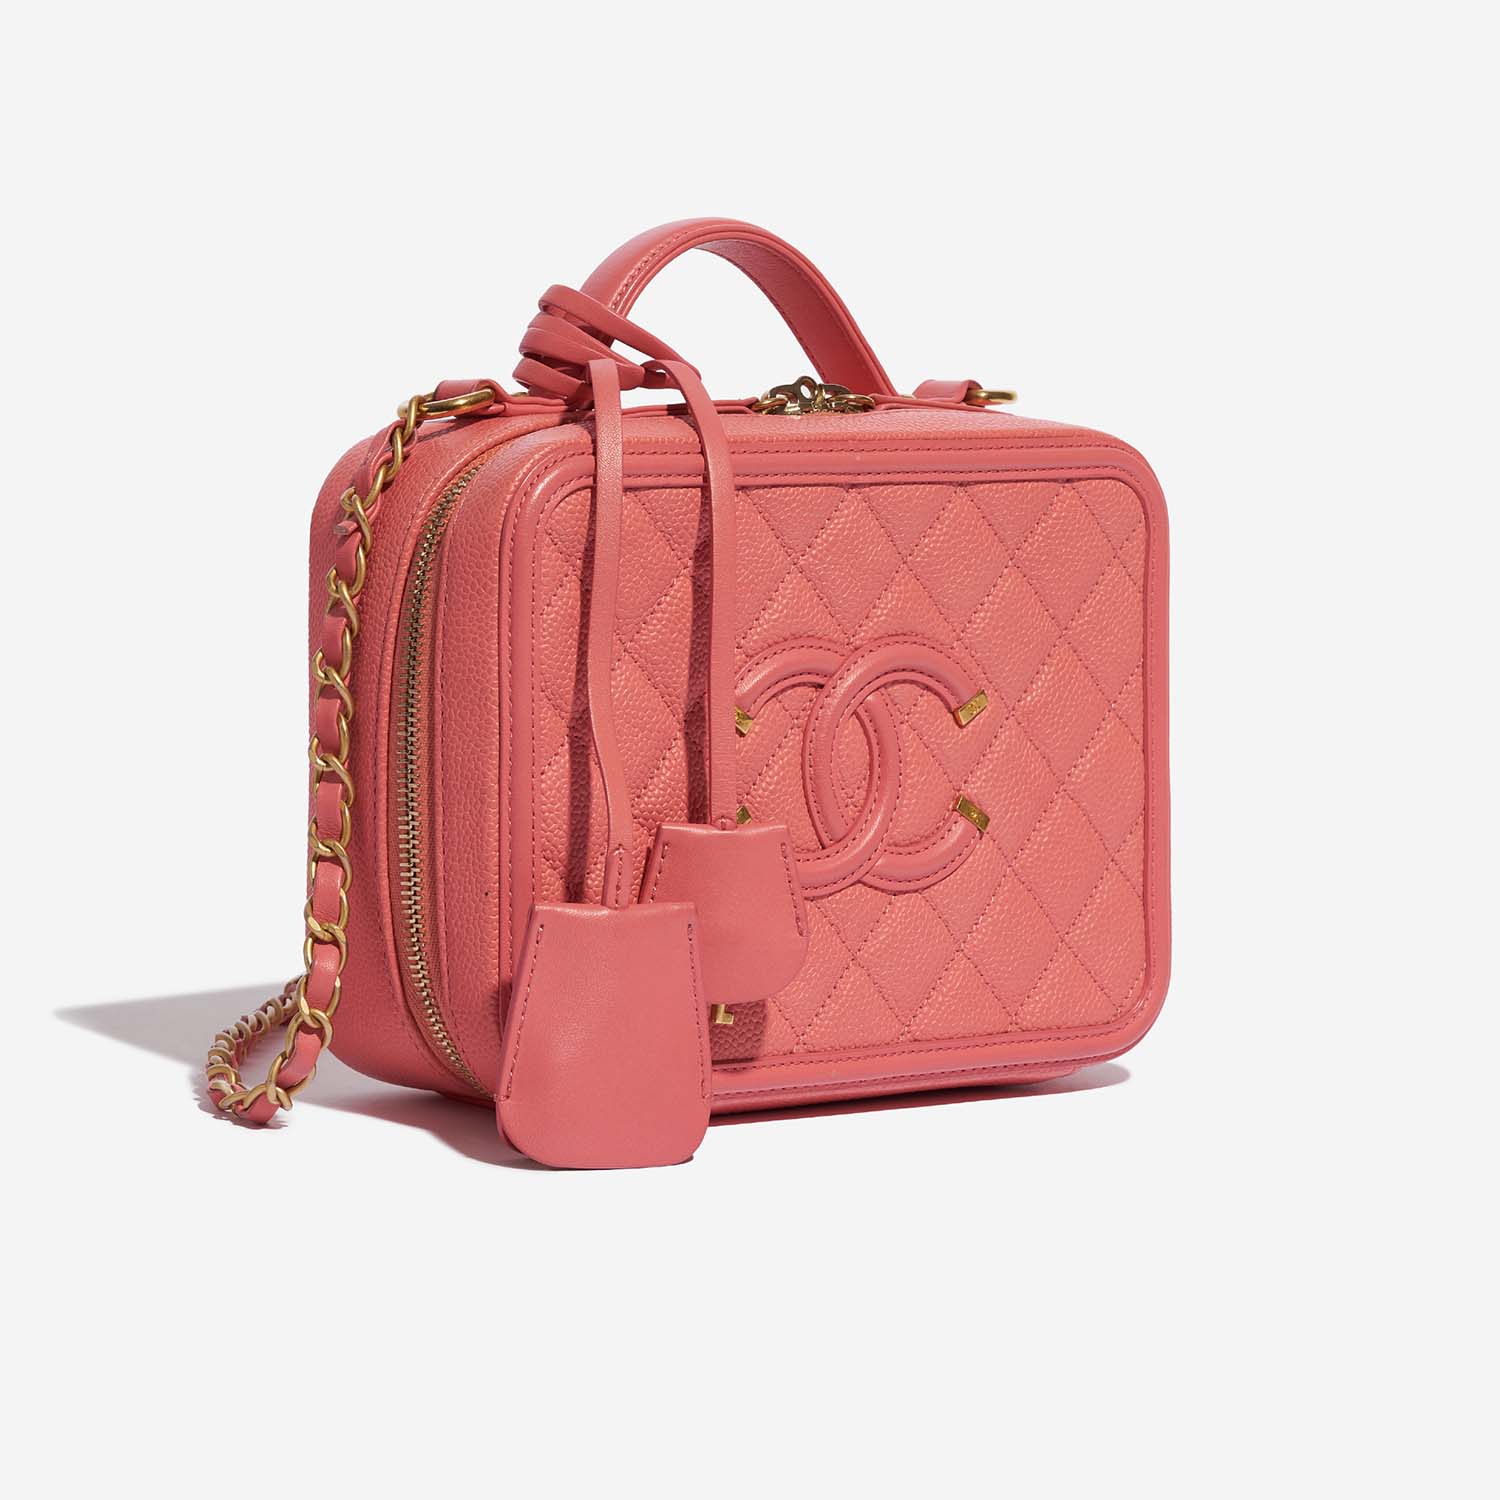 Chanel Vanity Medium Pink Side Front | Verkaufen Sie Ihre Designer-Tasche auf Saclab.com